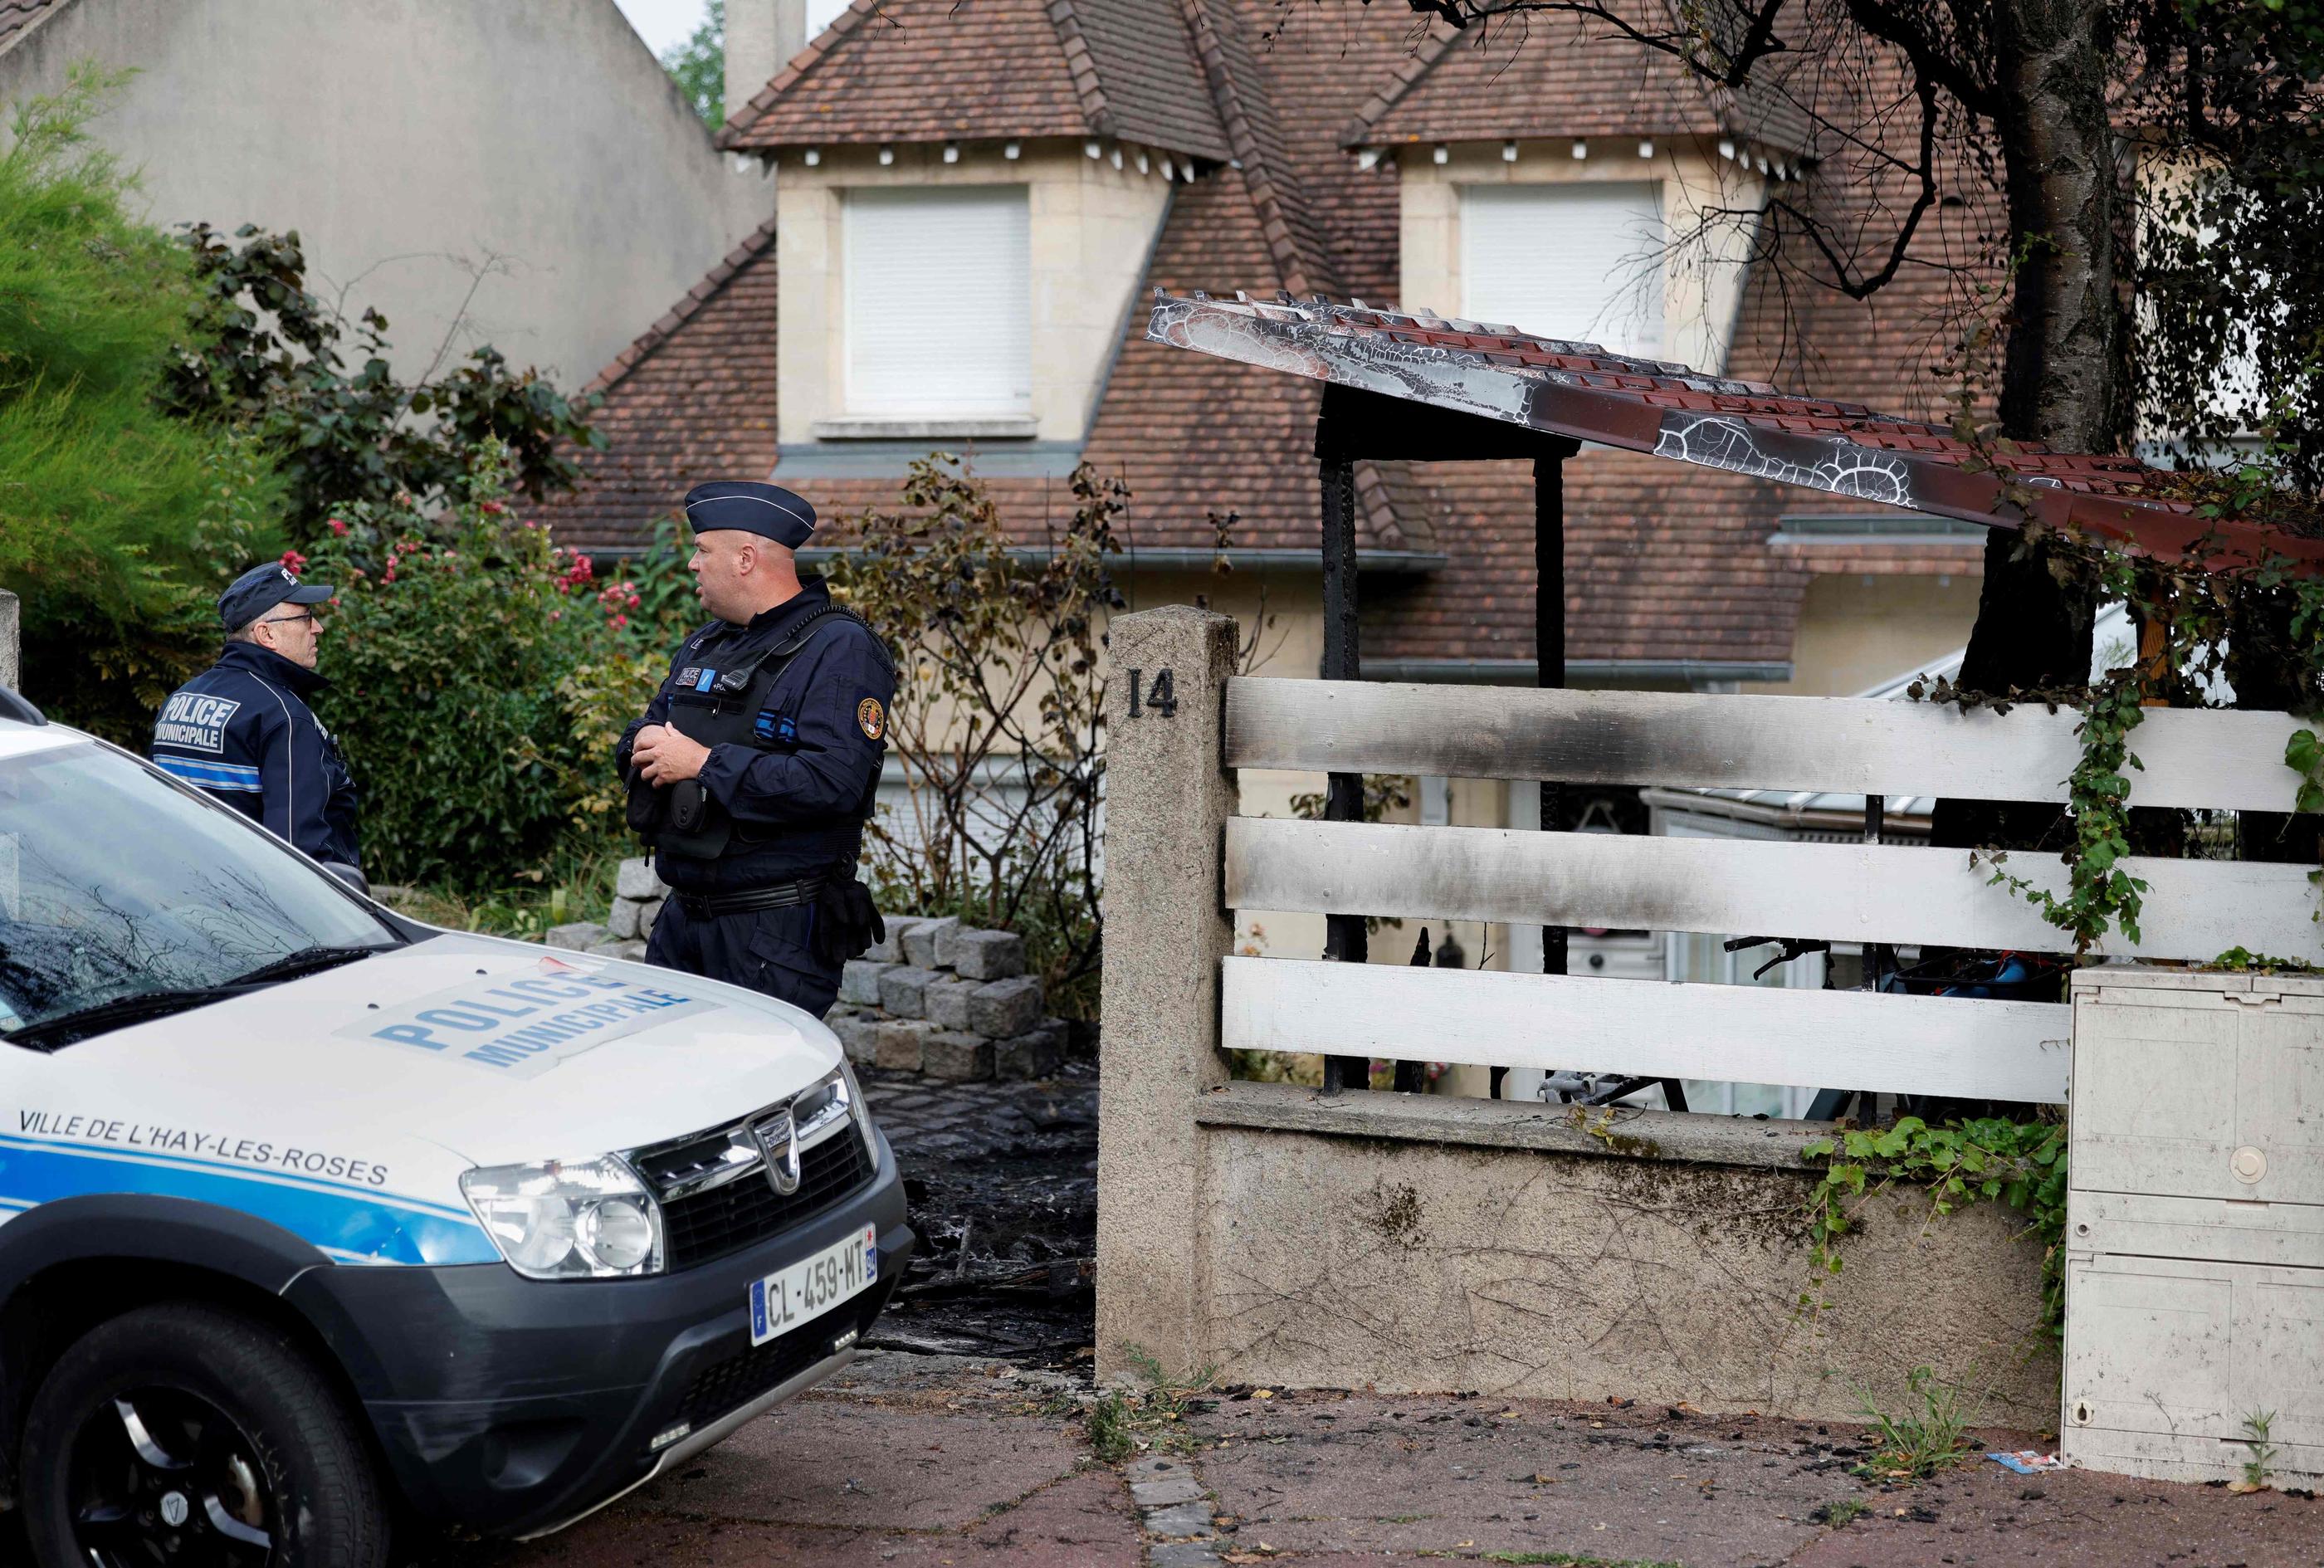 Ce dimanche, des policiers municipaux montaient la garde devant la maison du maire de L'Haÿ-les-Roses, attaquée dans la nuit par des émeutiers alors que la famille de l'élu dormait. AFP/Geoffroy Van der Hasselt